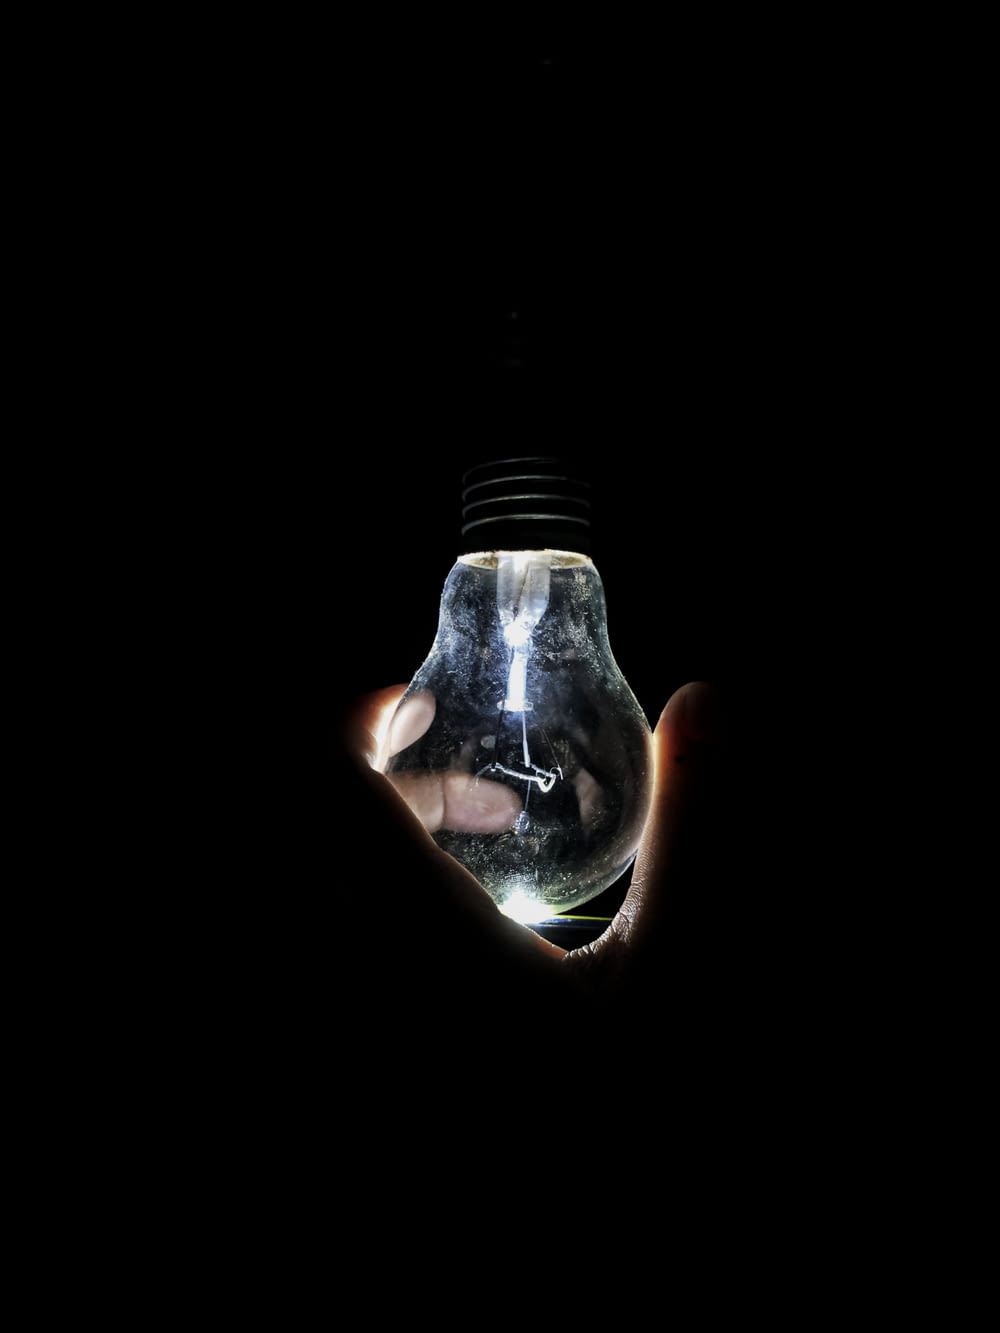 lighted bulb